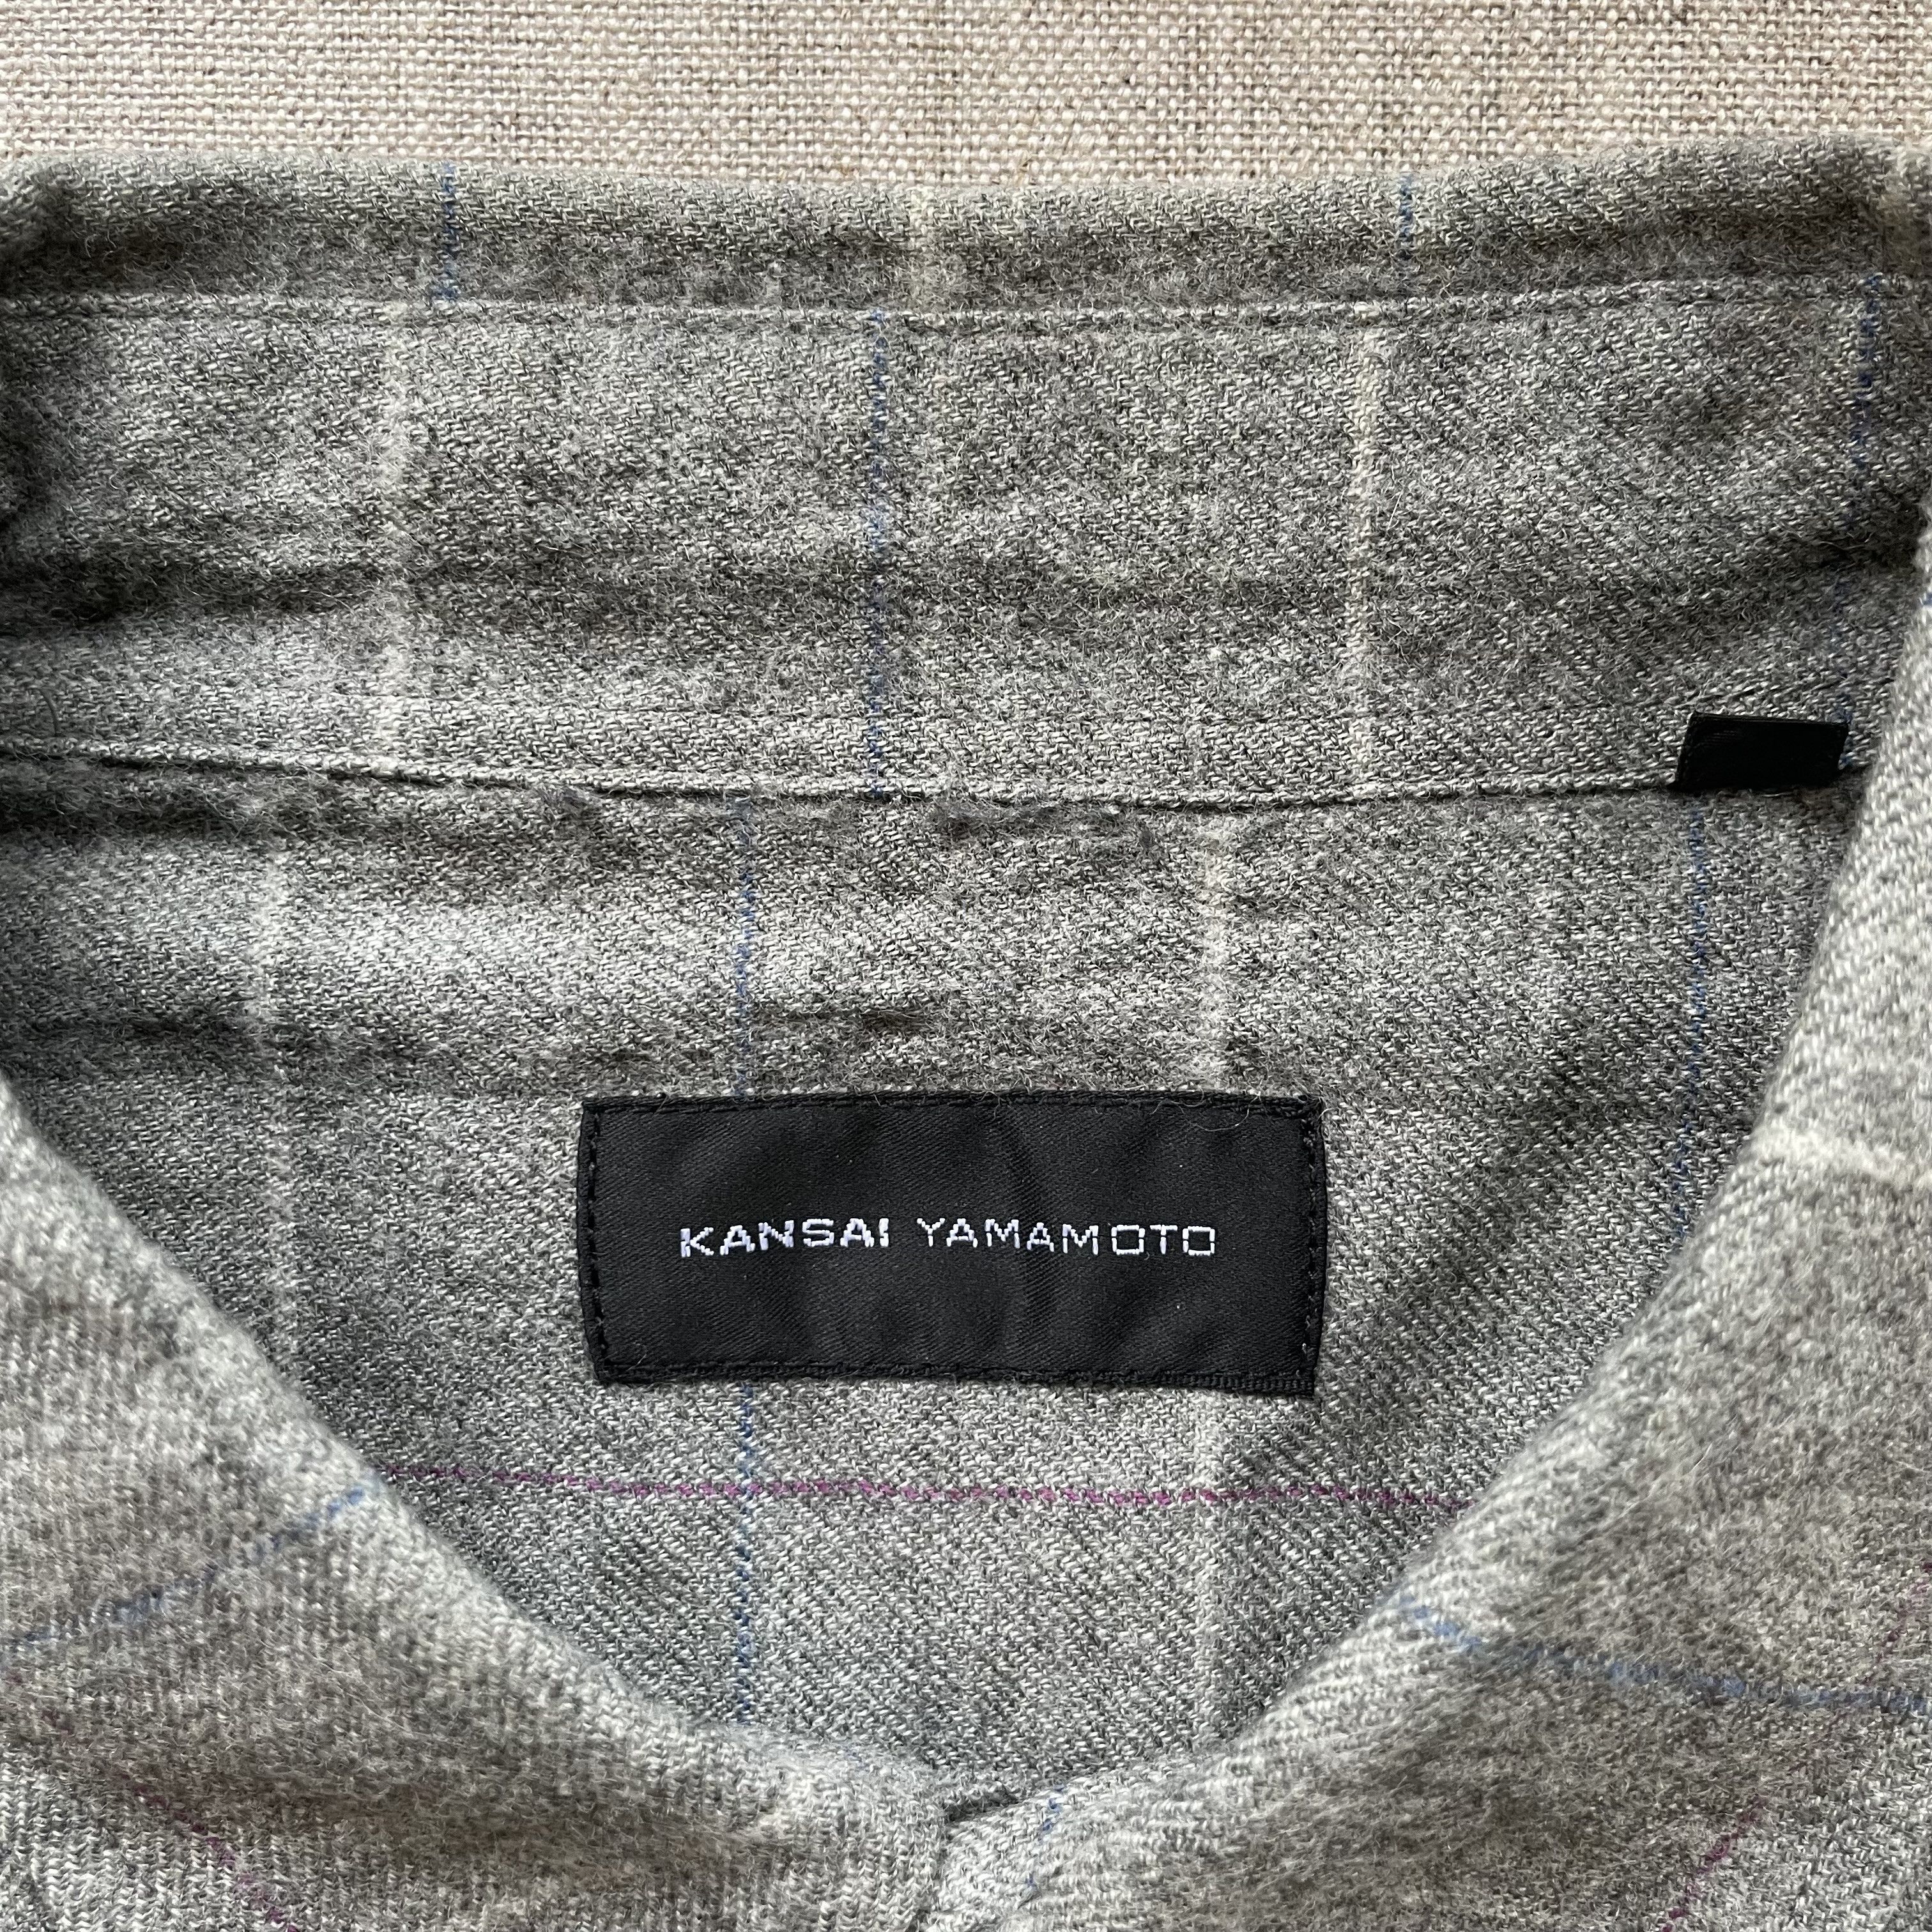 Kansai Yamamoto - Minimalist Check Shirt, Wool, (JP LL) - 3